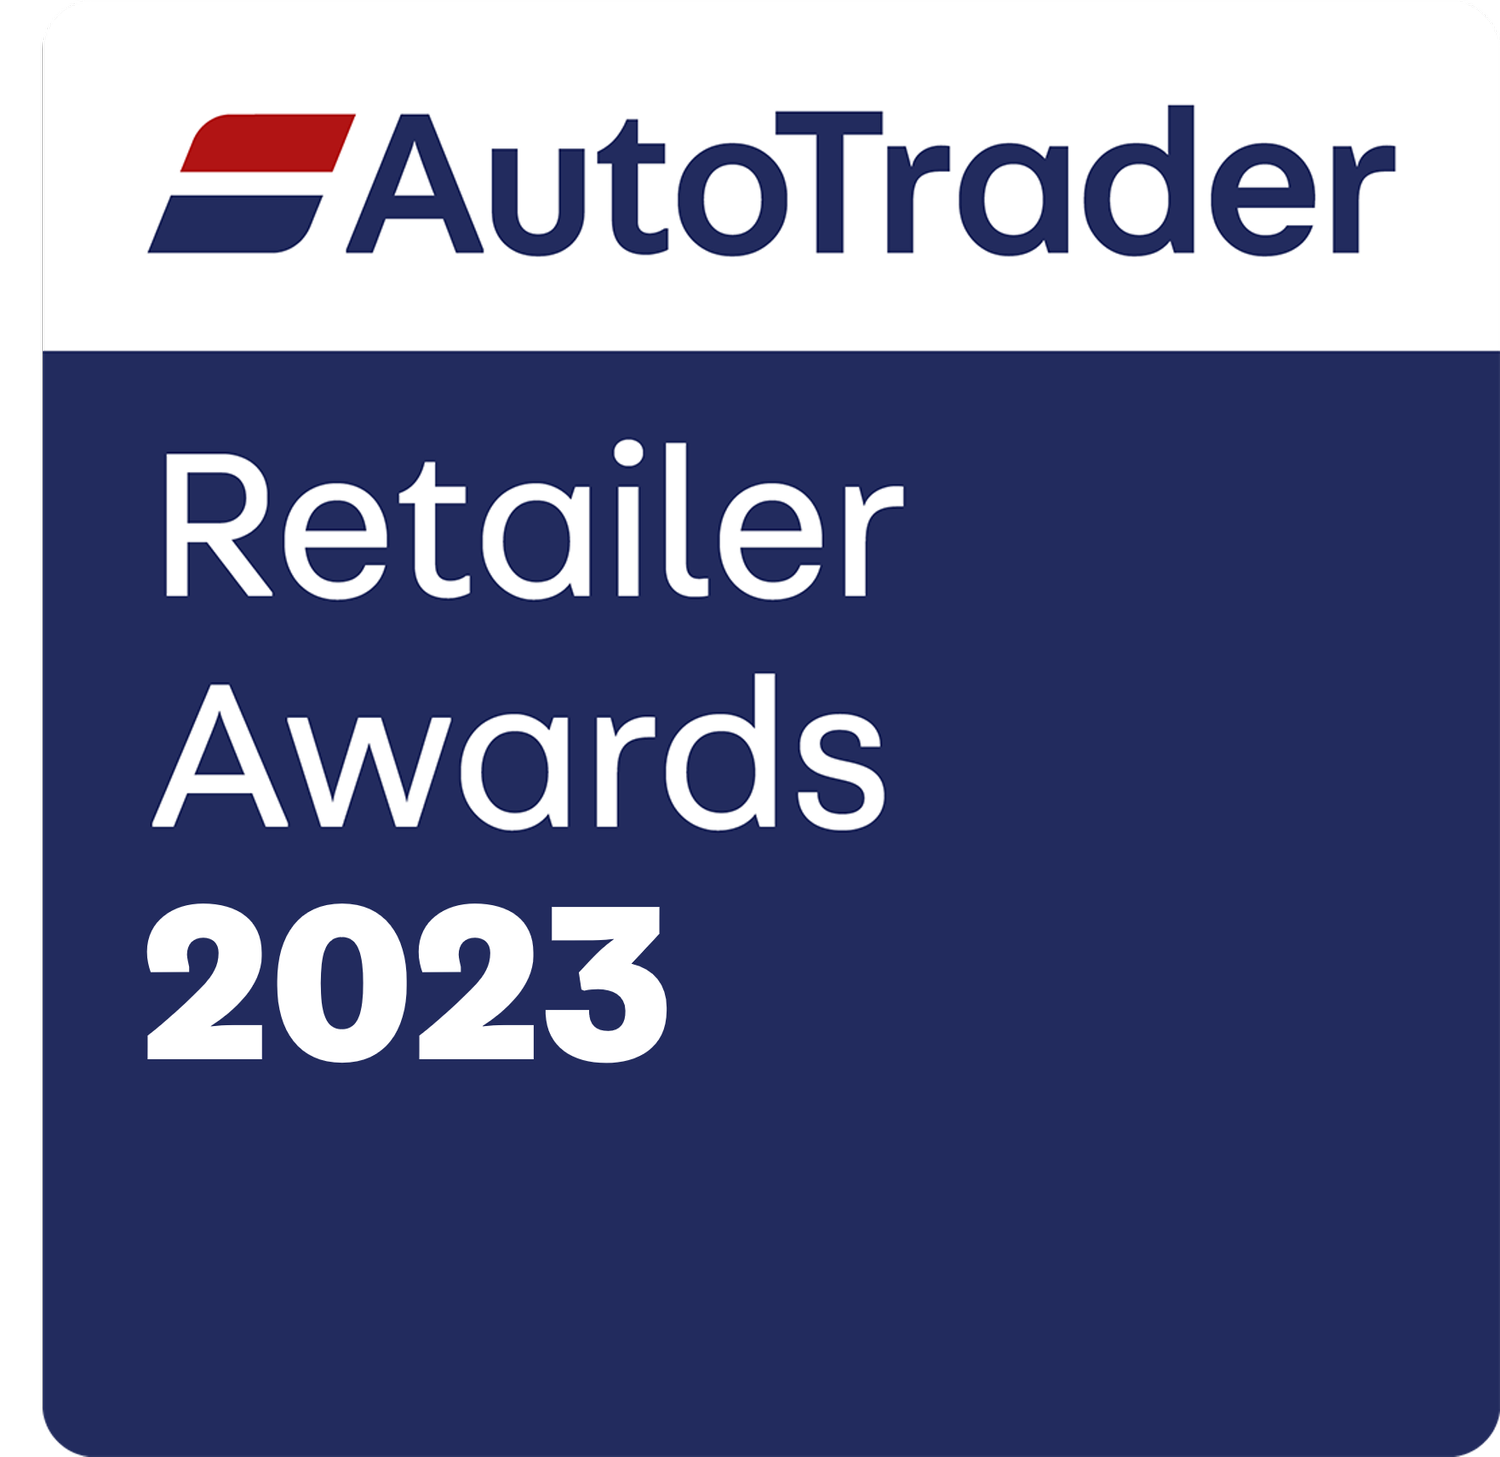 Auto Trader Retailer Awards 2023